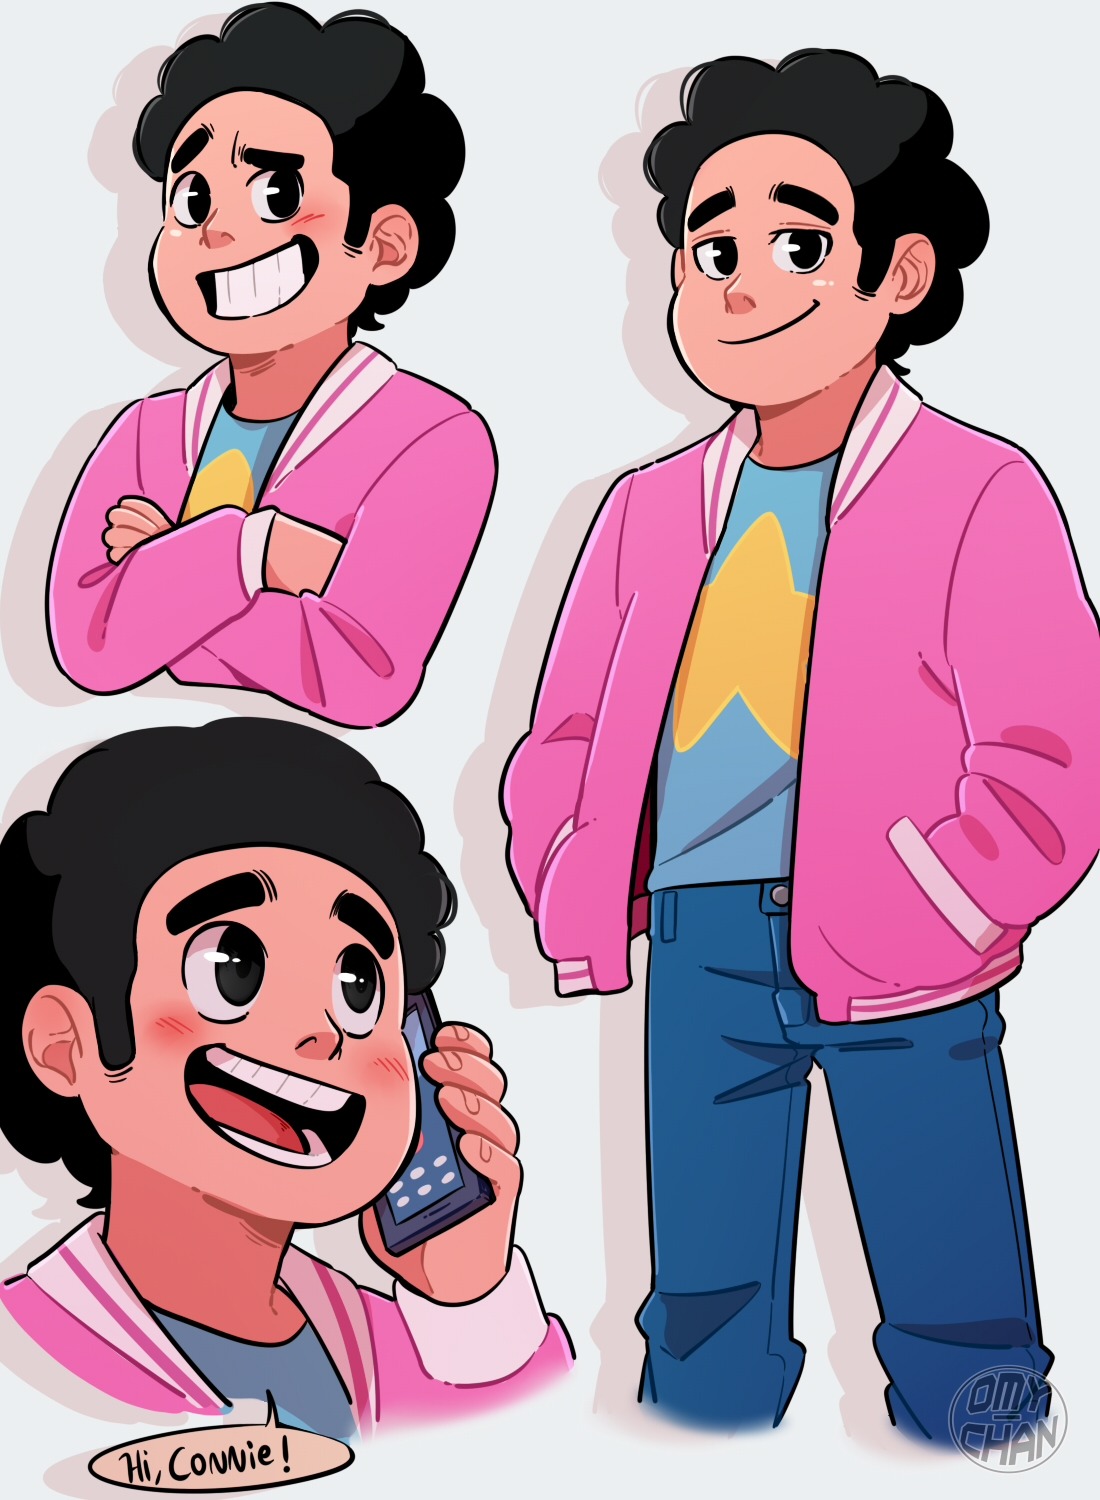 Steven grew up!!!